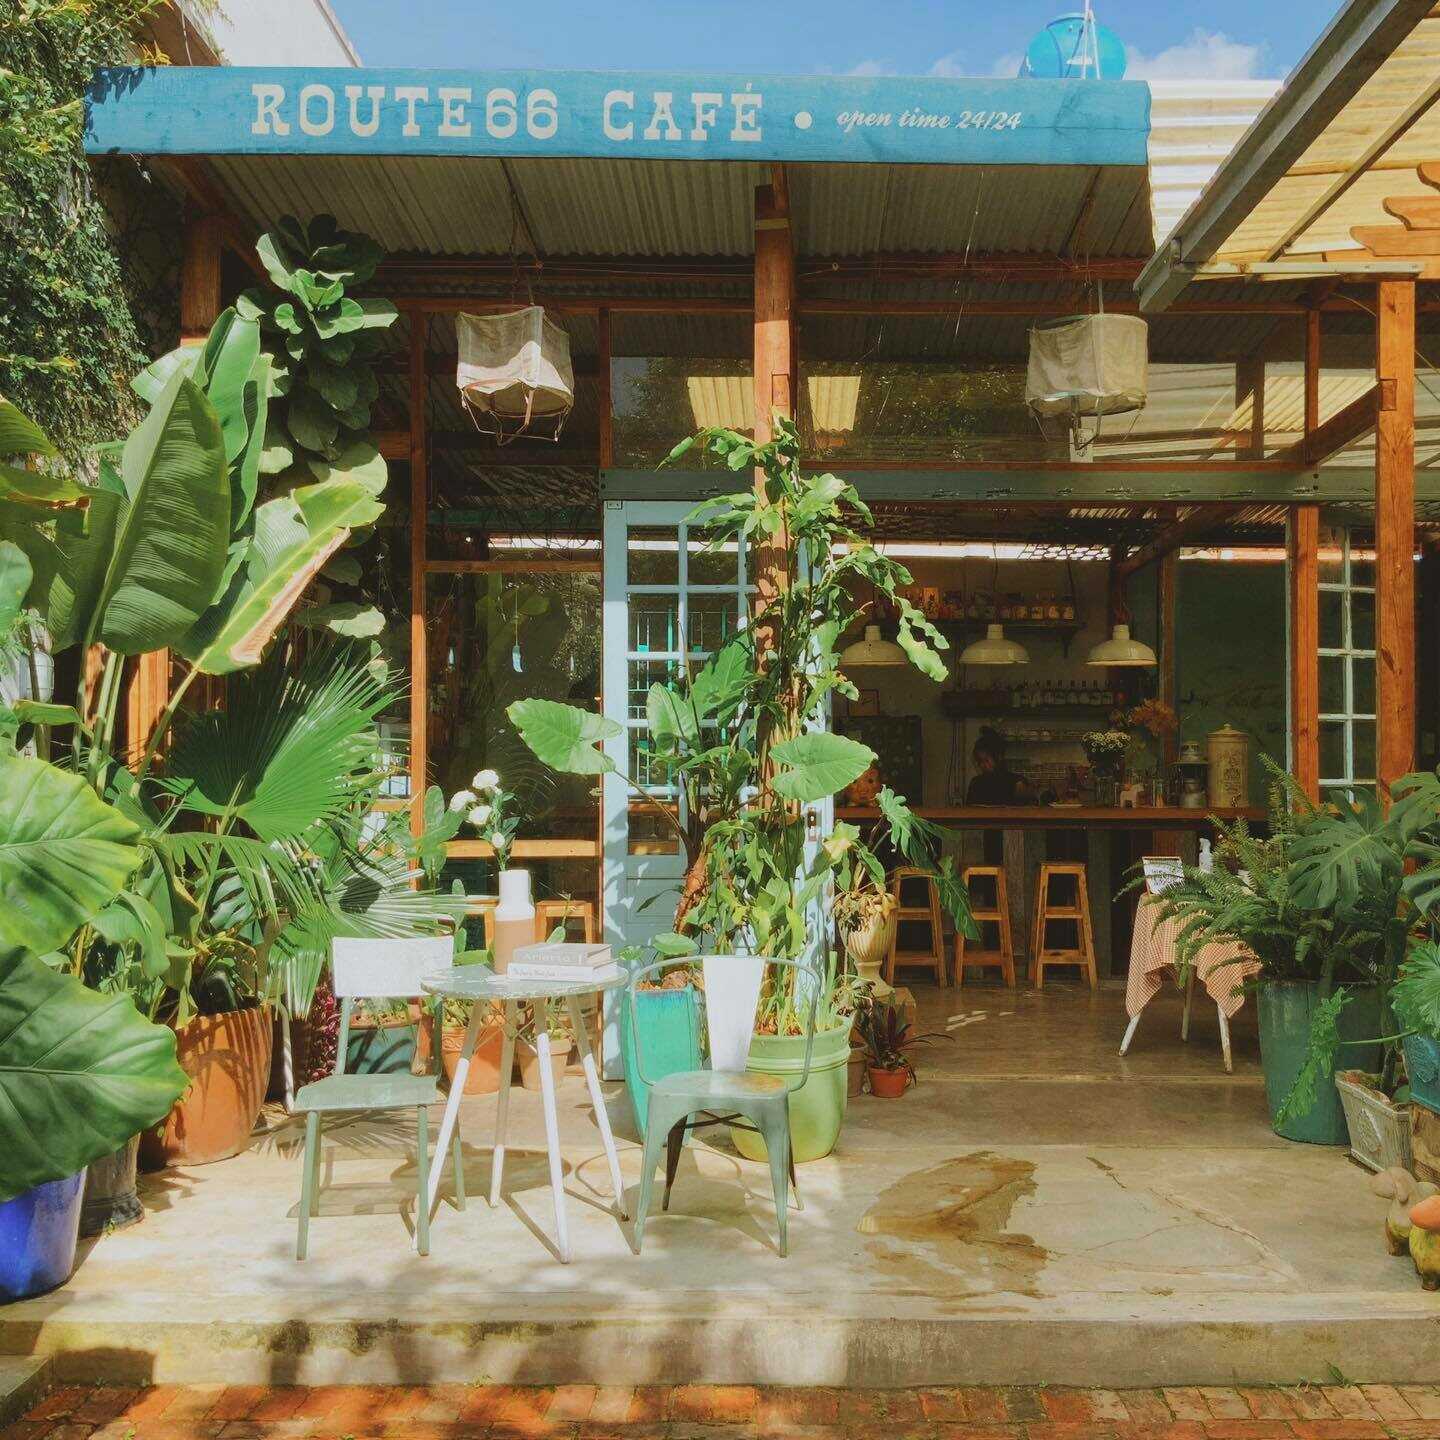 Route 66 Cafe - Nơi thong dong thả hồn trong đêm Đà Lạt không ngủ 4